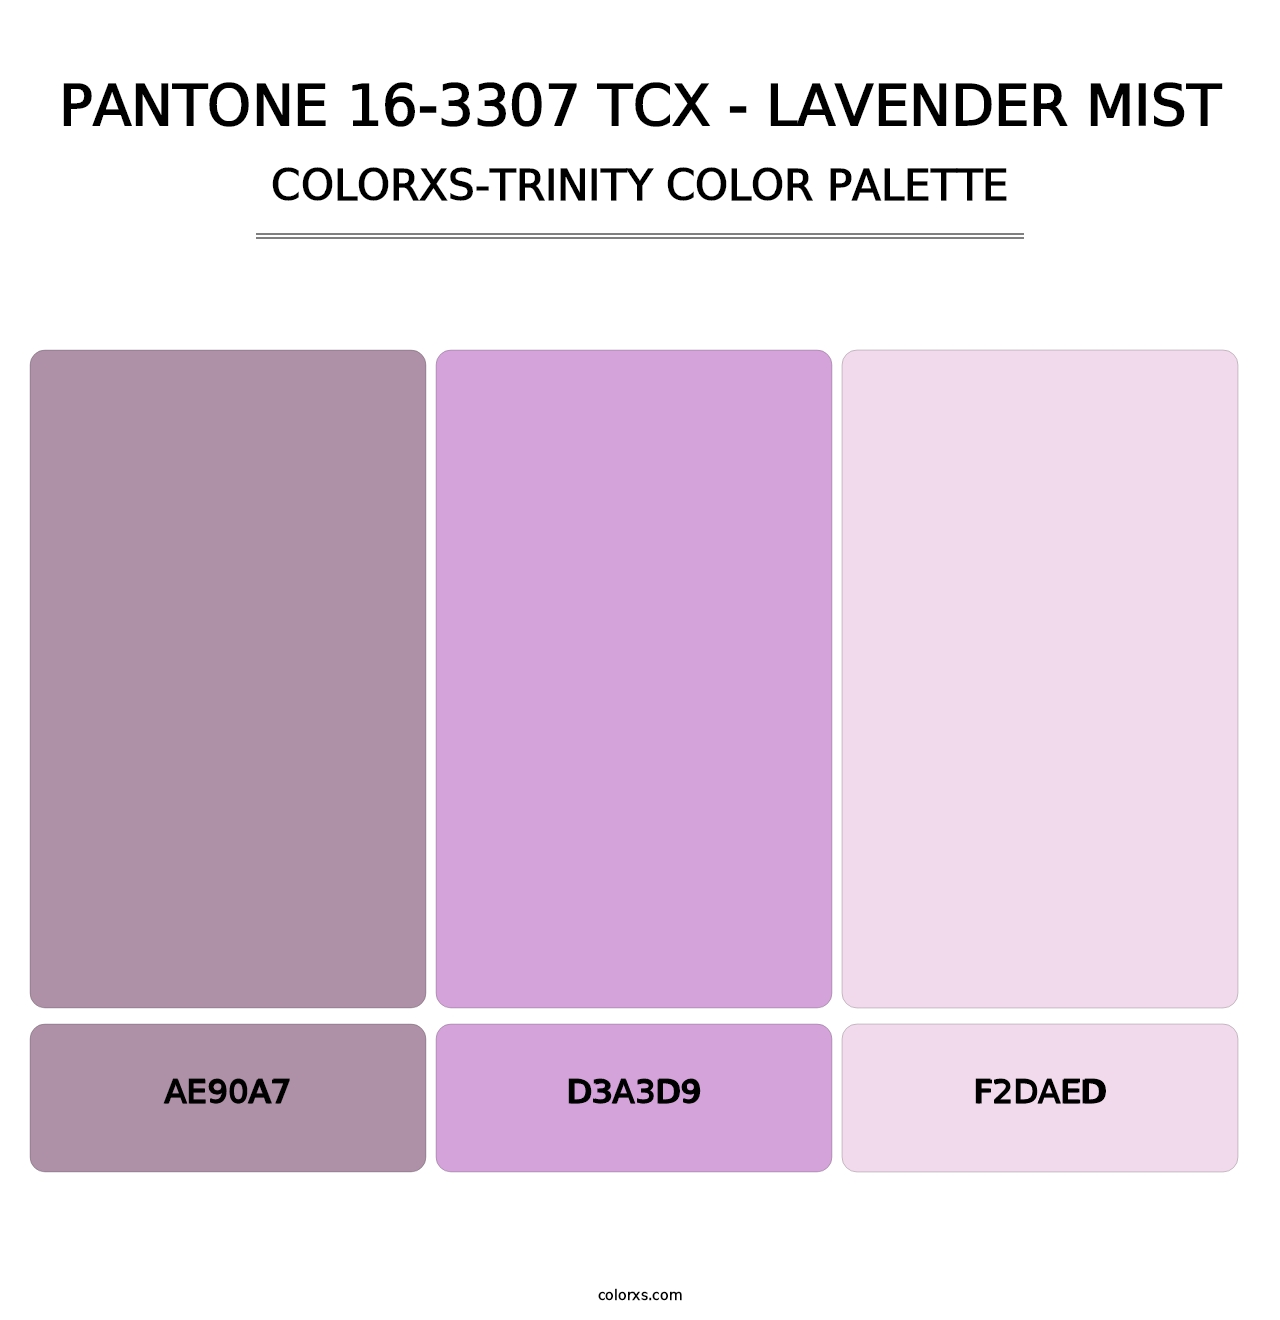 PANTONE 16-3307 TCX - Lavender Mist - Colorxs Trinity Palette